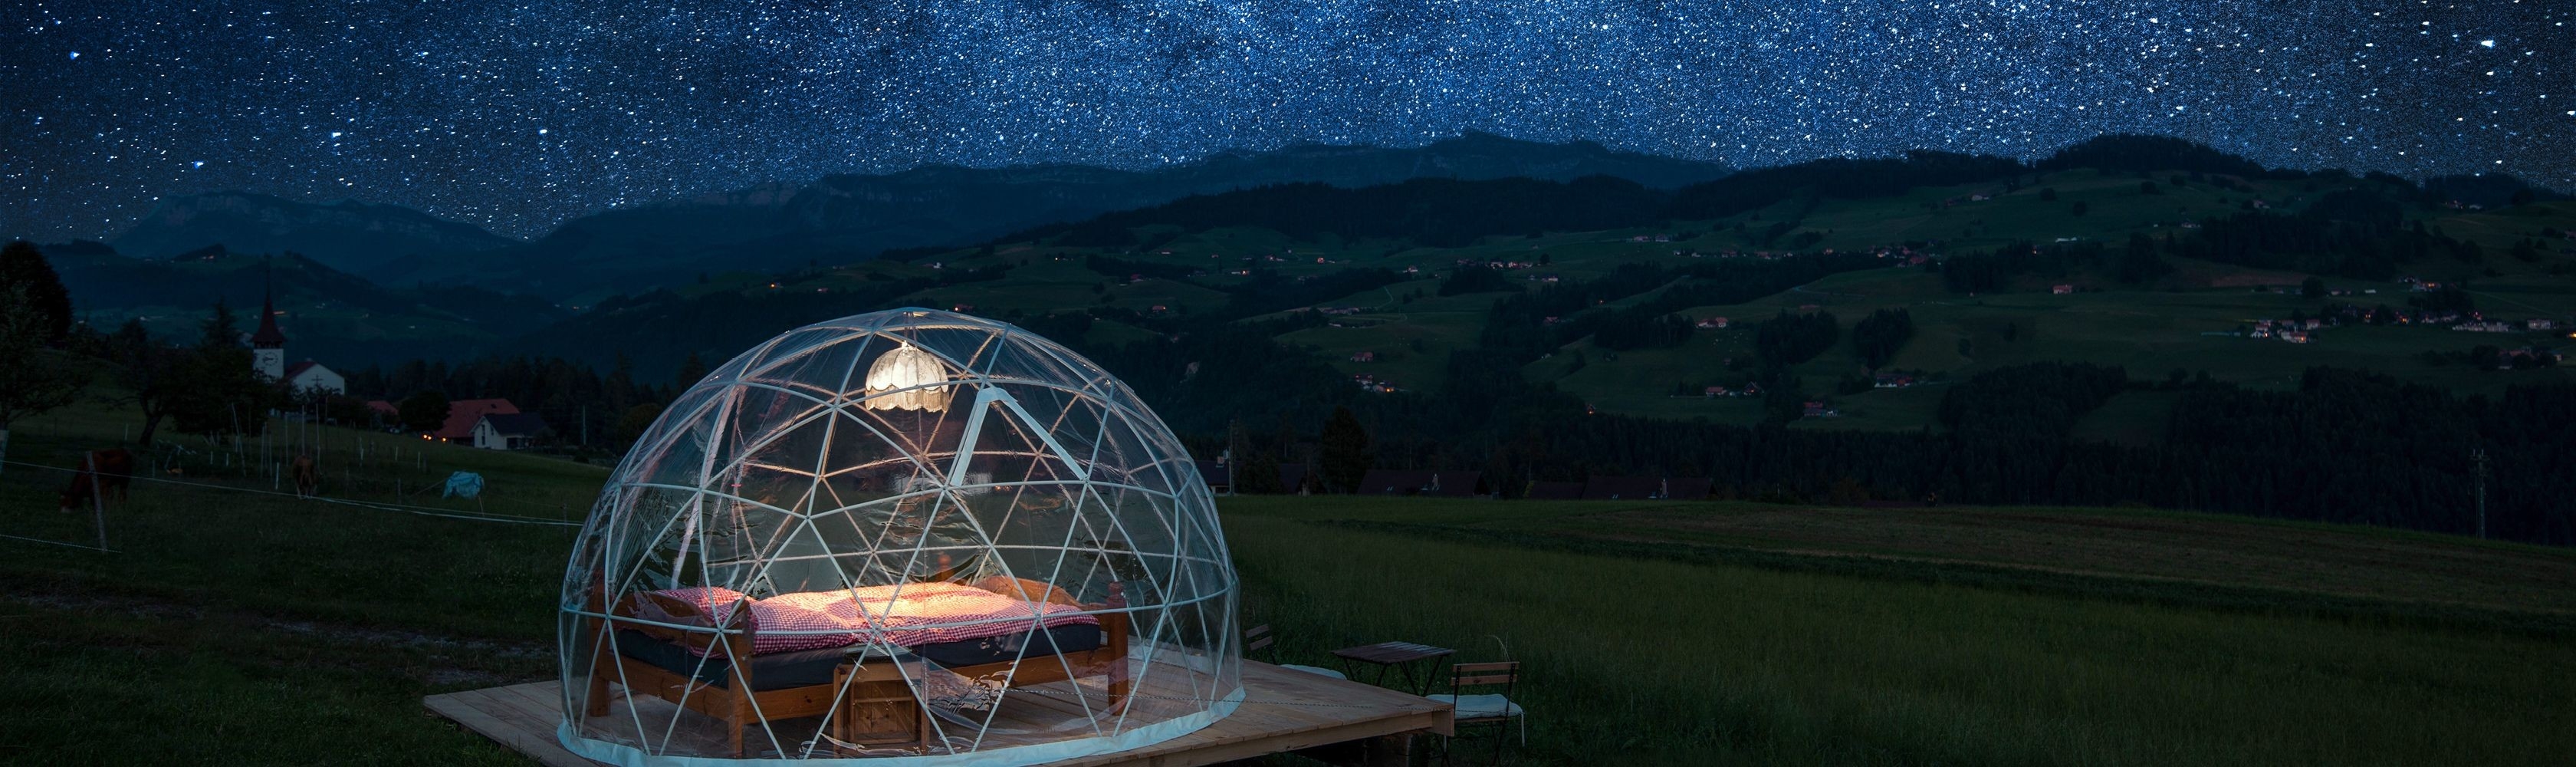 Ansicht der Bubble Suite in der Nacht unter grandiosem Sternenhimmel